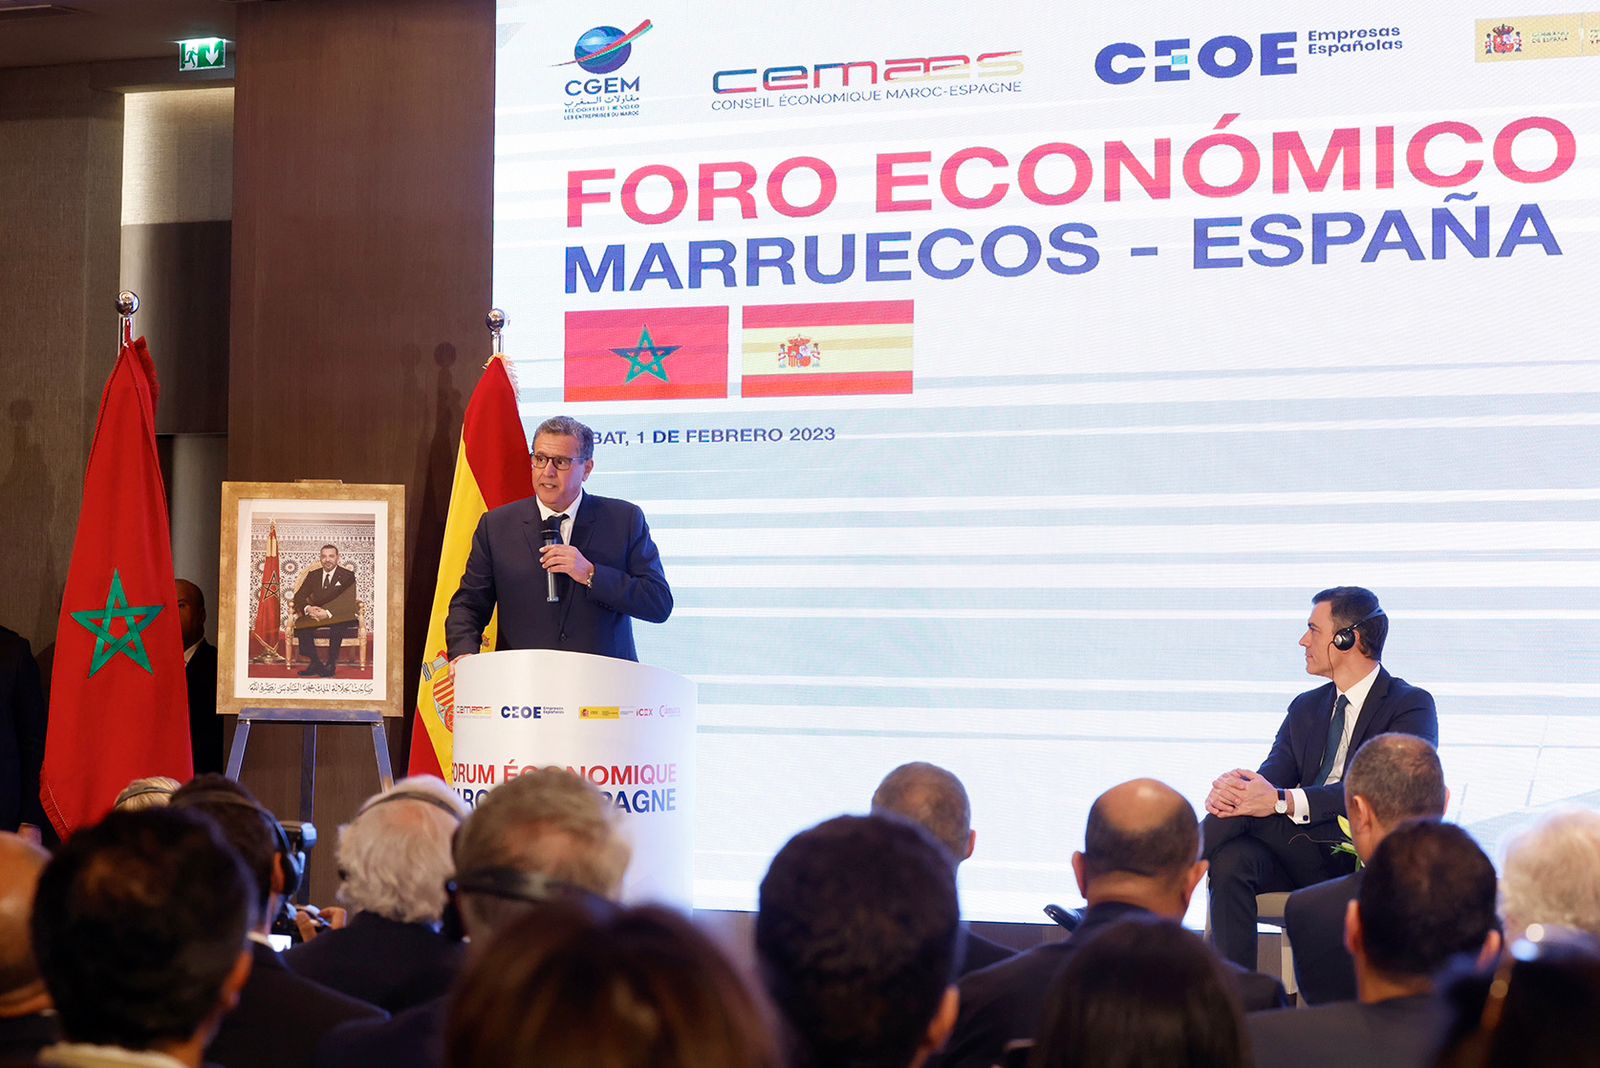 أخنوش: إسبانيا أول شريك تجاري للمغرب وبلادنا الوجهة الأولى لصادراتها في إفريقا